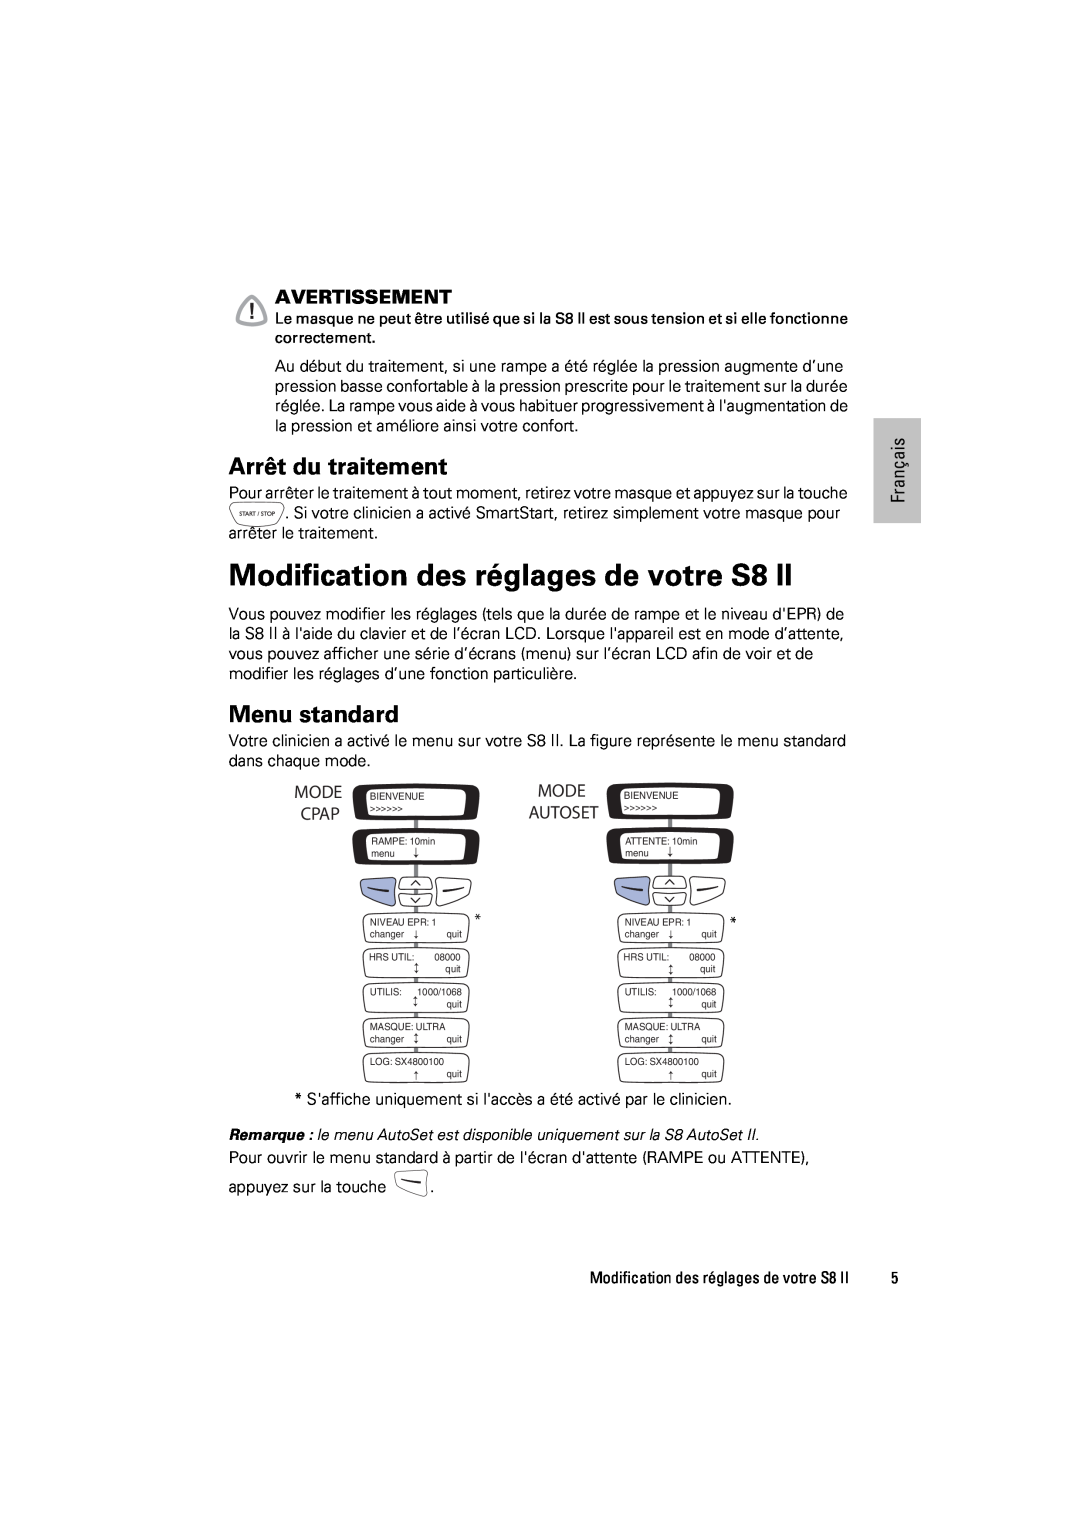 ResMed s8 manual Modification des réglages de votre S8, Arrêt du traitement, Menu standard, Avertissement, Français 